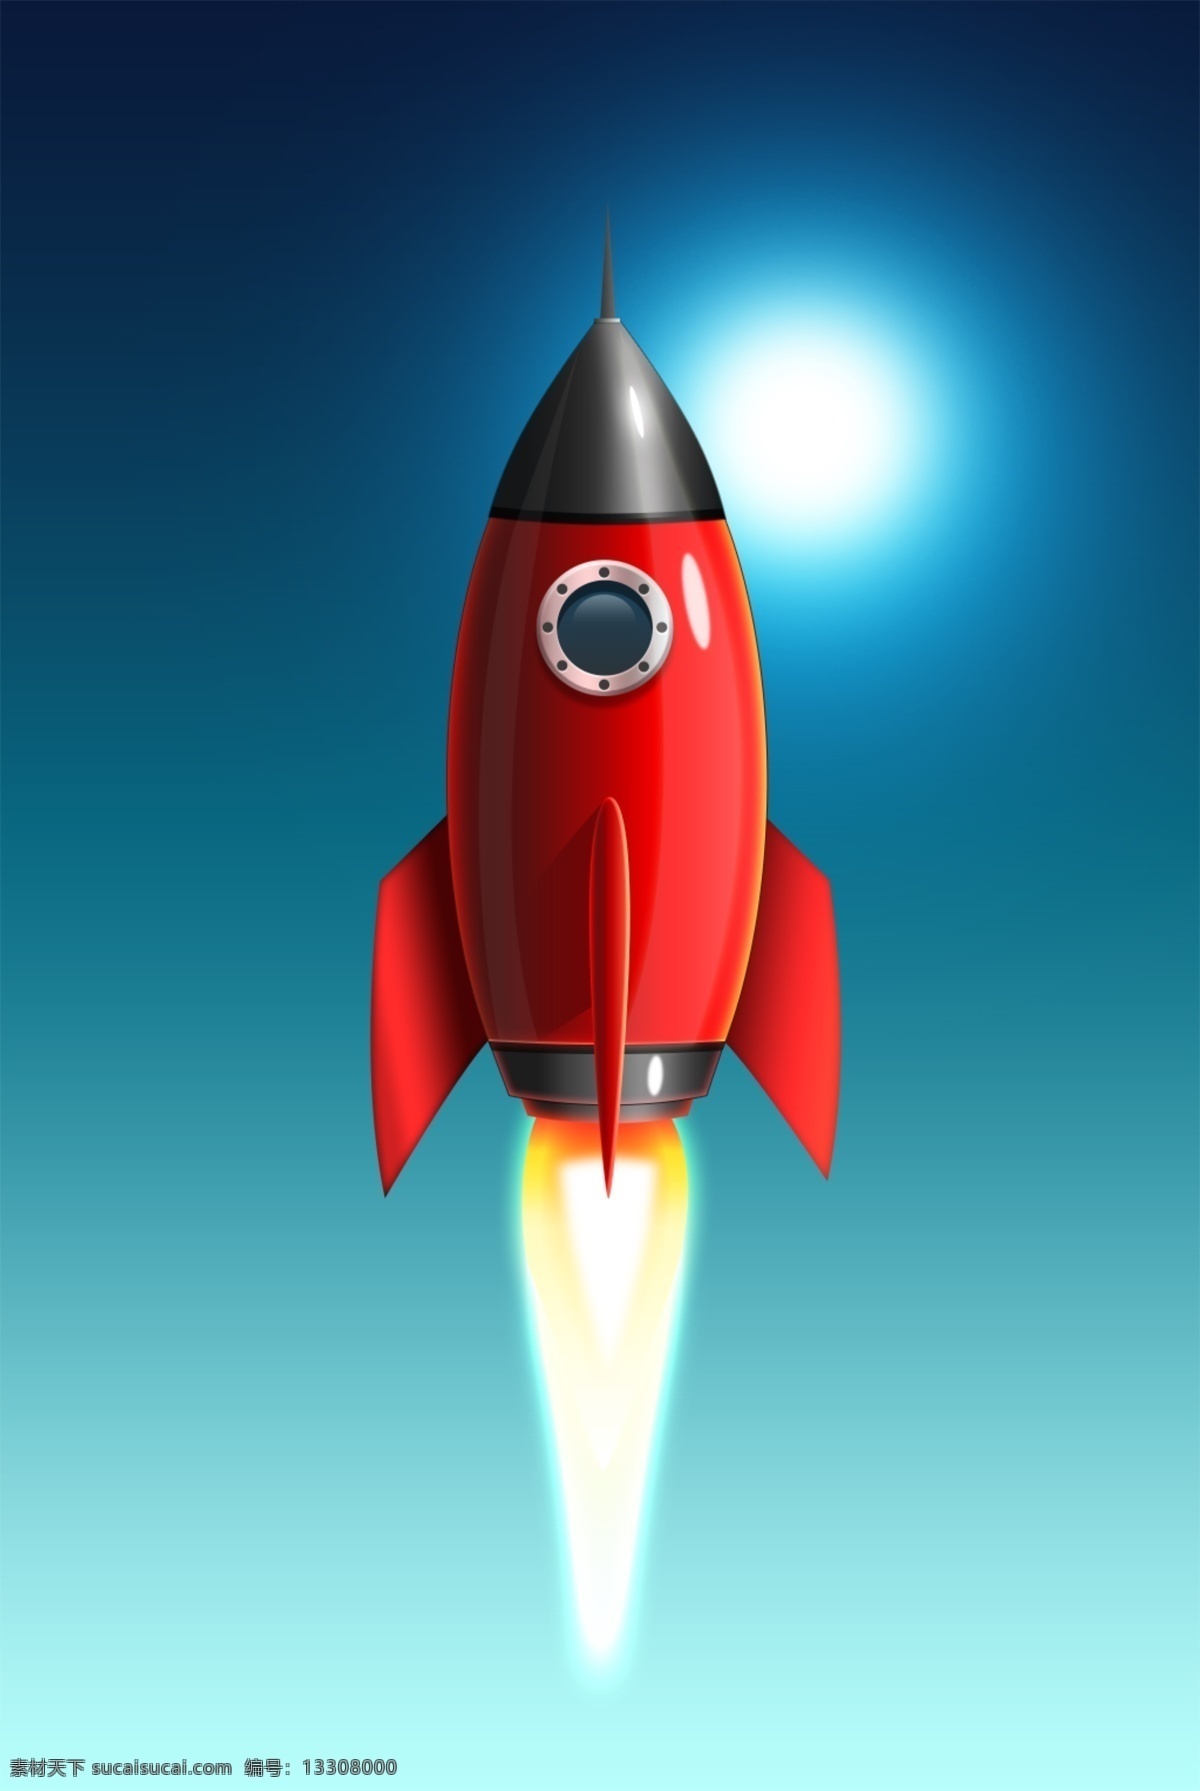 精美 红色 火箭 图标 icon 图标设计 icon设计 icon图标 网页图标 火箭图标 火箭icon 火箭图标设计 发射火箭图标